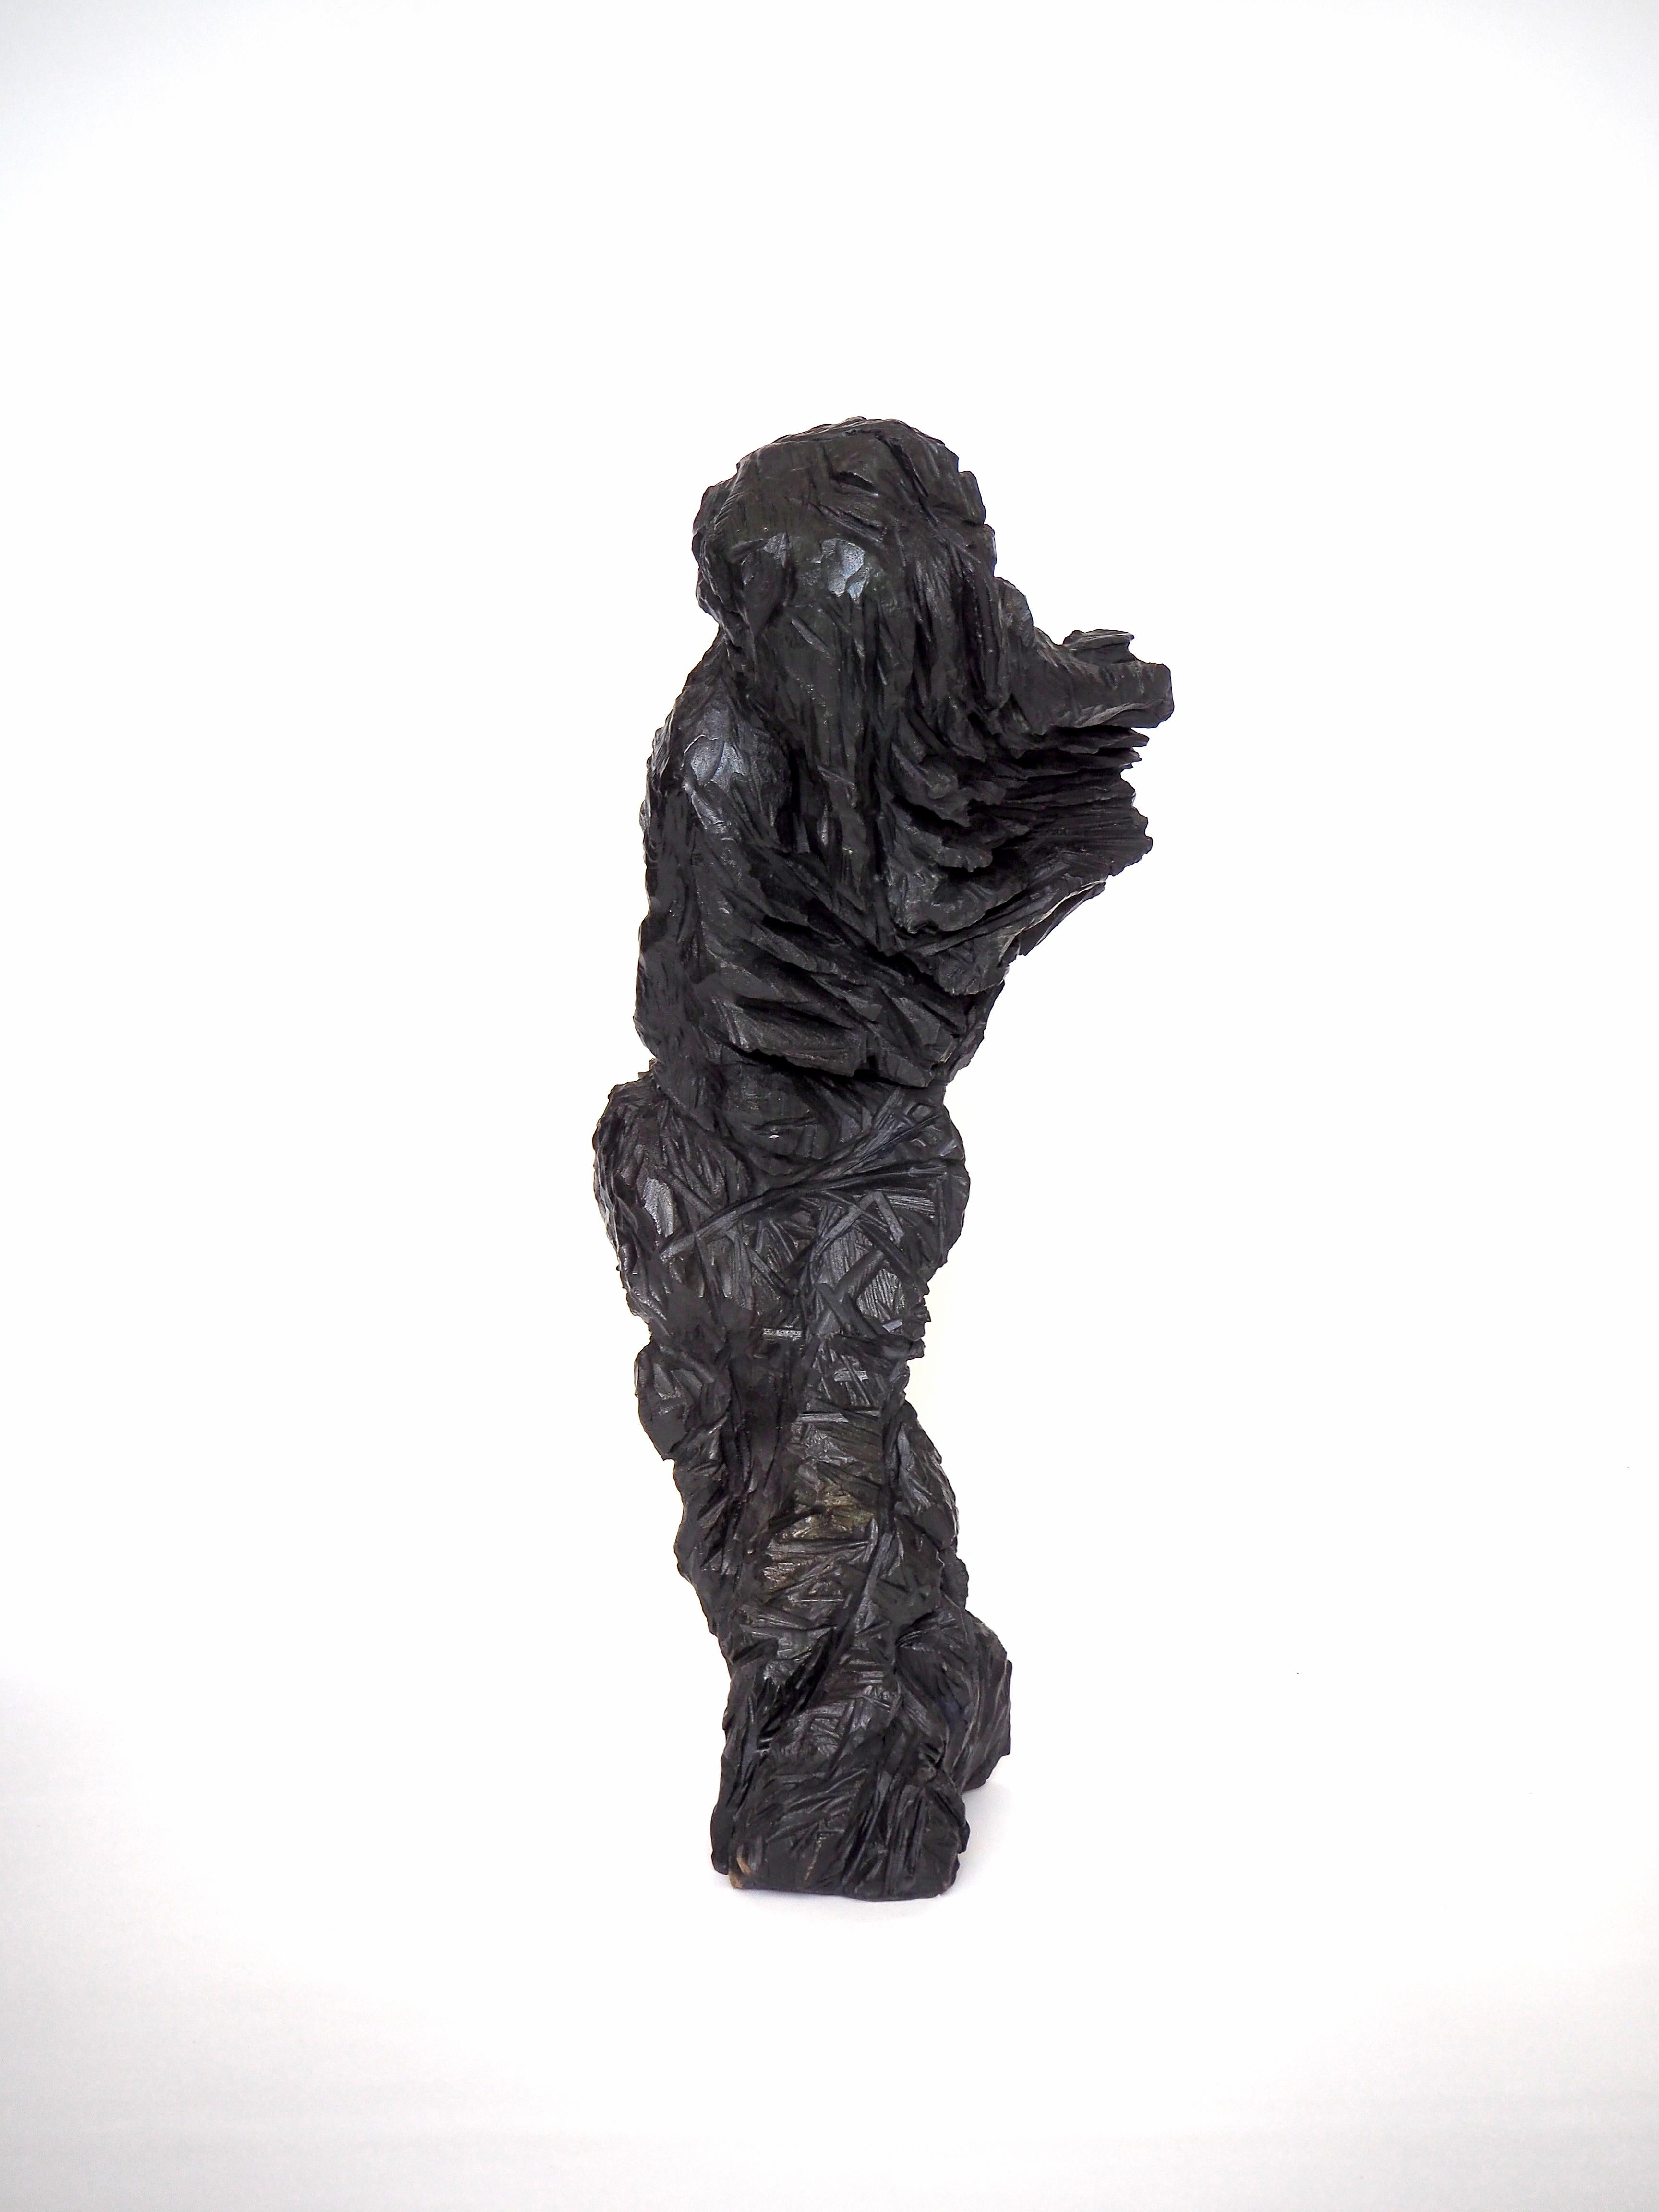 The Other, 2018, ist eine figurale Form eines Wesens in Bewegung, die ursprünglich aus einem einzigen Stück englischer Eiche geschnitzt und dann in Bronze gegossen wurde. 

Die Skulptur ist Teil einer Reihe von Werken, die sich mit dem spirituellen